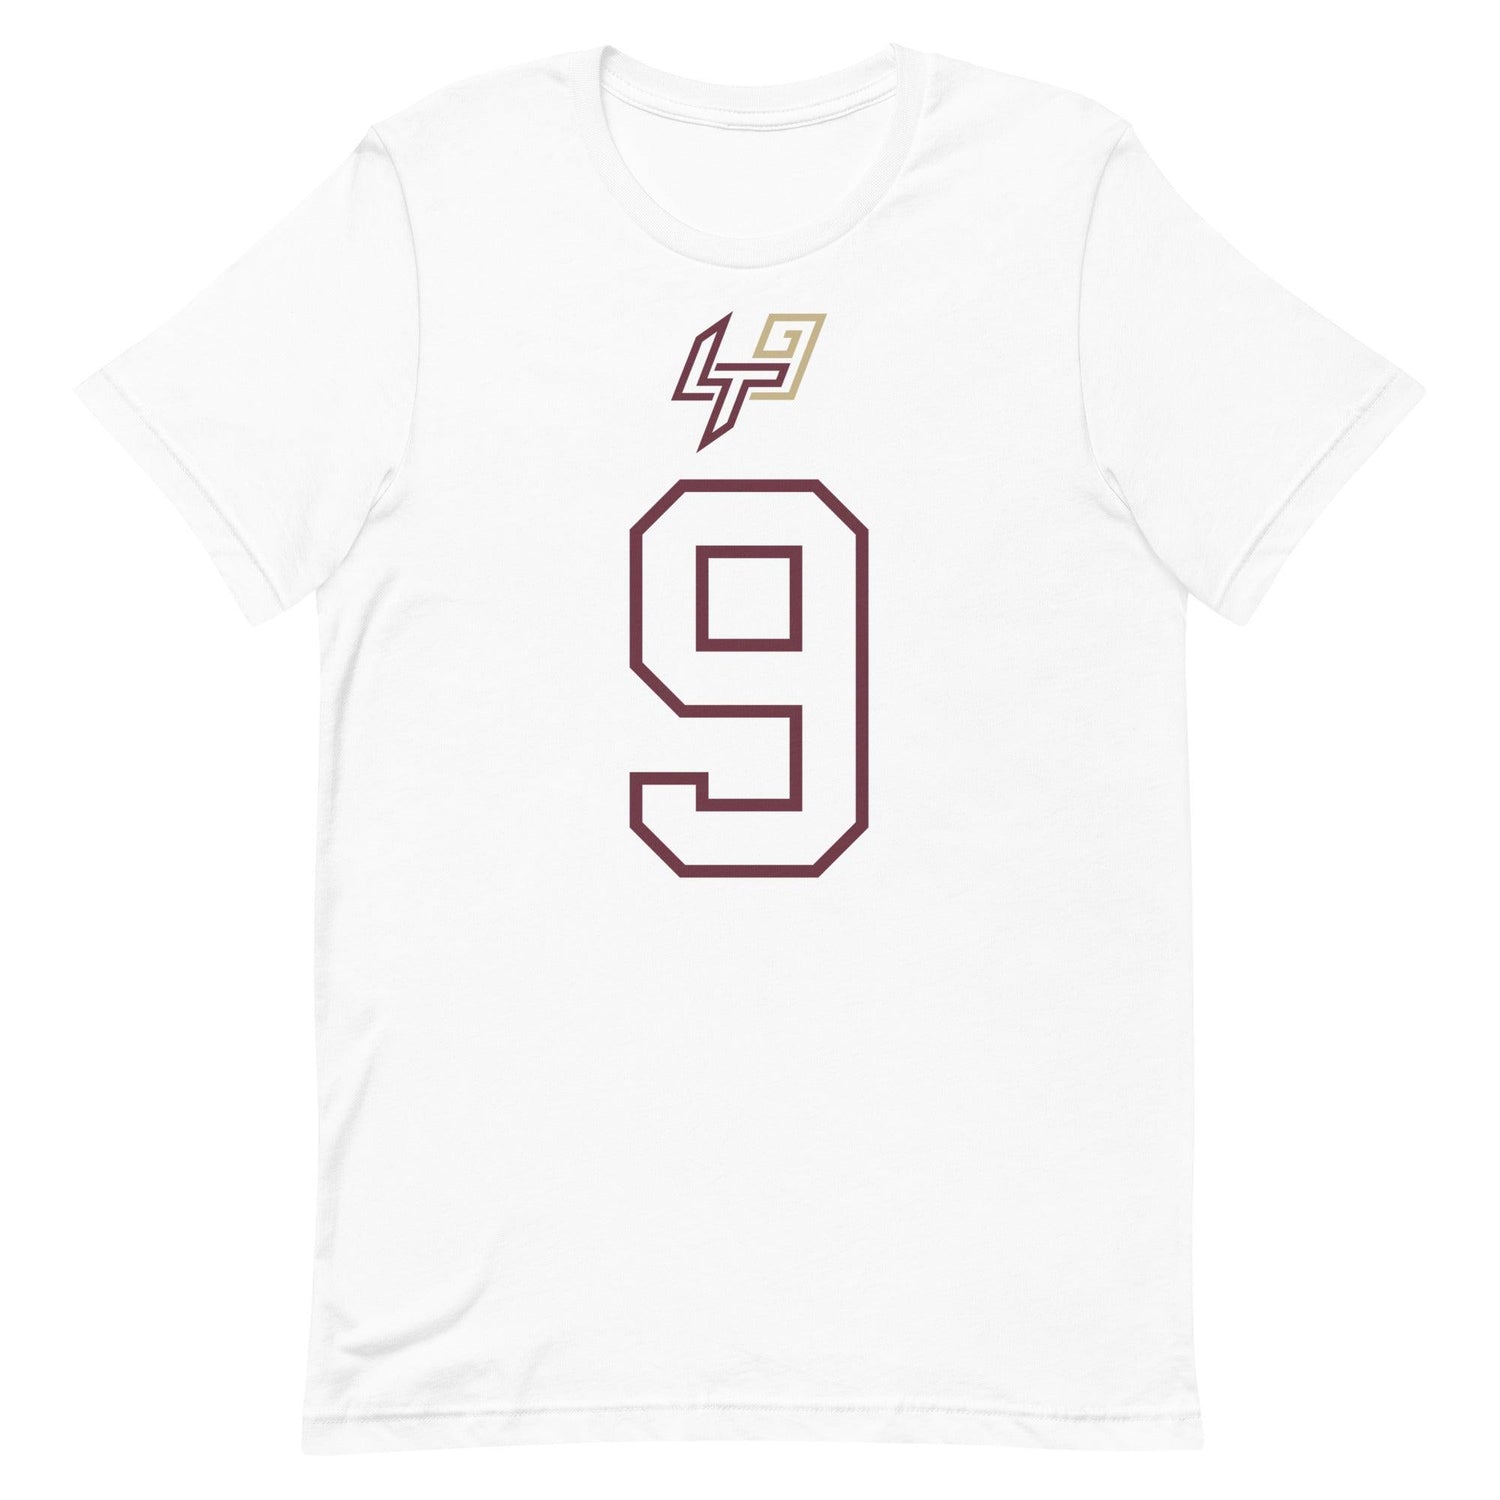 Lawrance Toafili "Jersey" t-shirt - Fan Arch